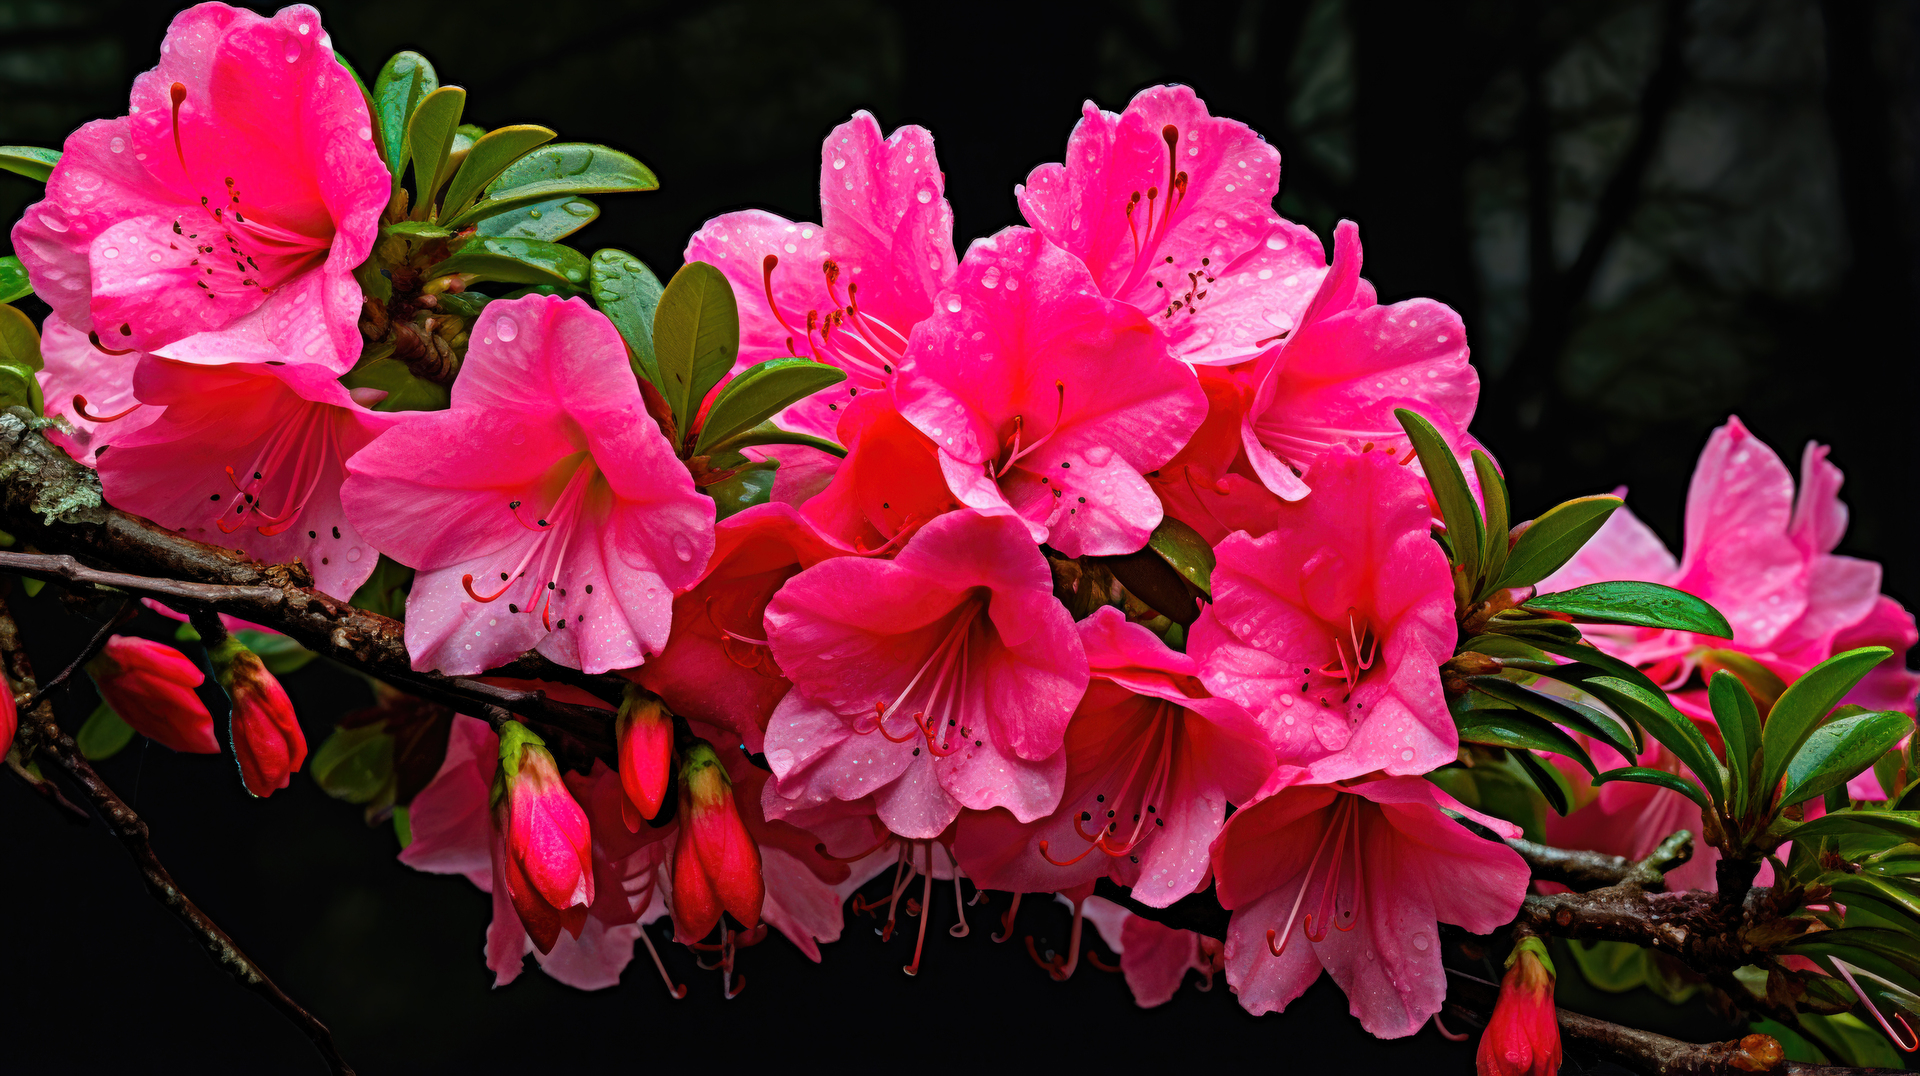 W malowniczym ogrodzie, Rhododendron Roseum Elegans stoi dumnie, jak król kwiatów. Jego gałęzie, pełne życia i witalności, rozpościerają się wokół, tworząc zielone zasłony pełne tajemniczości. Kwiaty w odcieniach różu, jak delikatne perełki, rozkwitają na gałązkach, emanując pięknem i wspaniałym zapachem. To prawdziwa uczta dla zmysłów, która wypełnia przestrzeń magią i zachwyca każdego obserwatora, pozostawiając niezapomniane wrażenie swoją wyjątkową elegancją